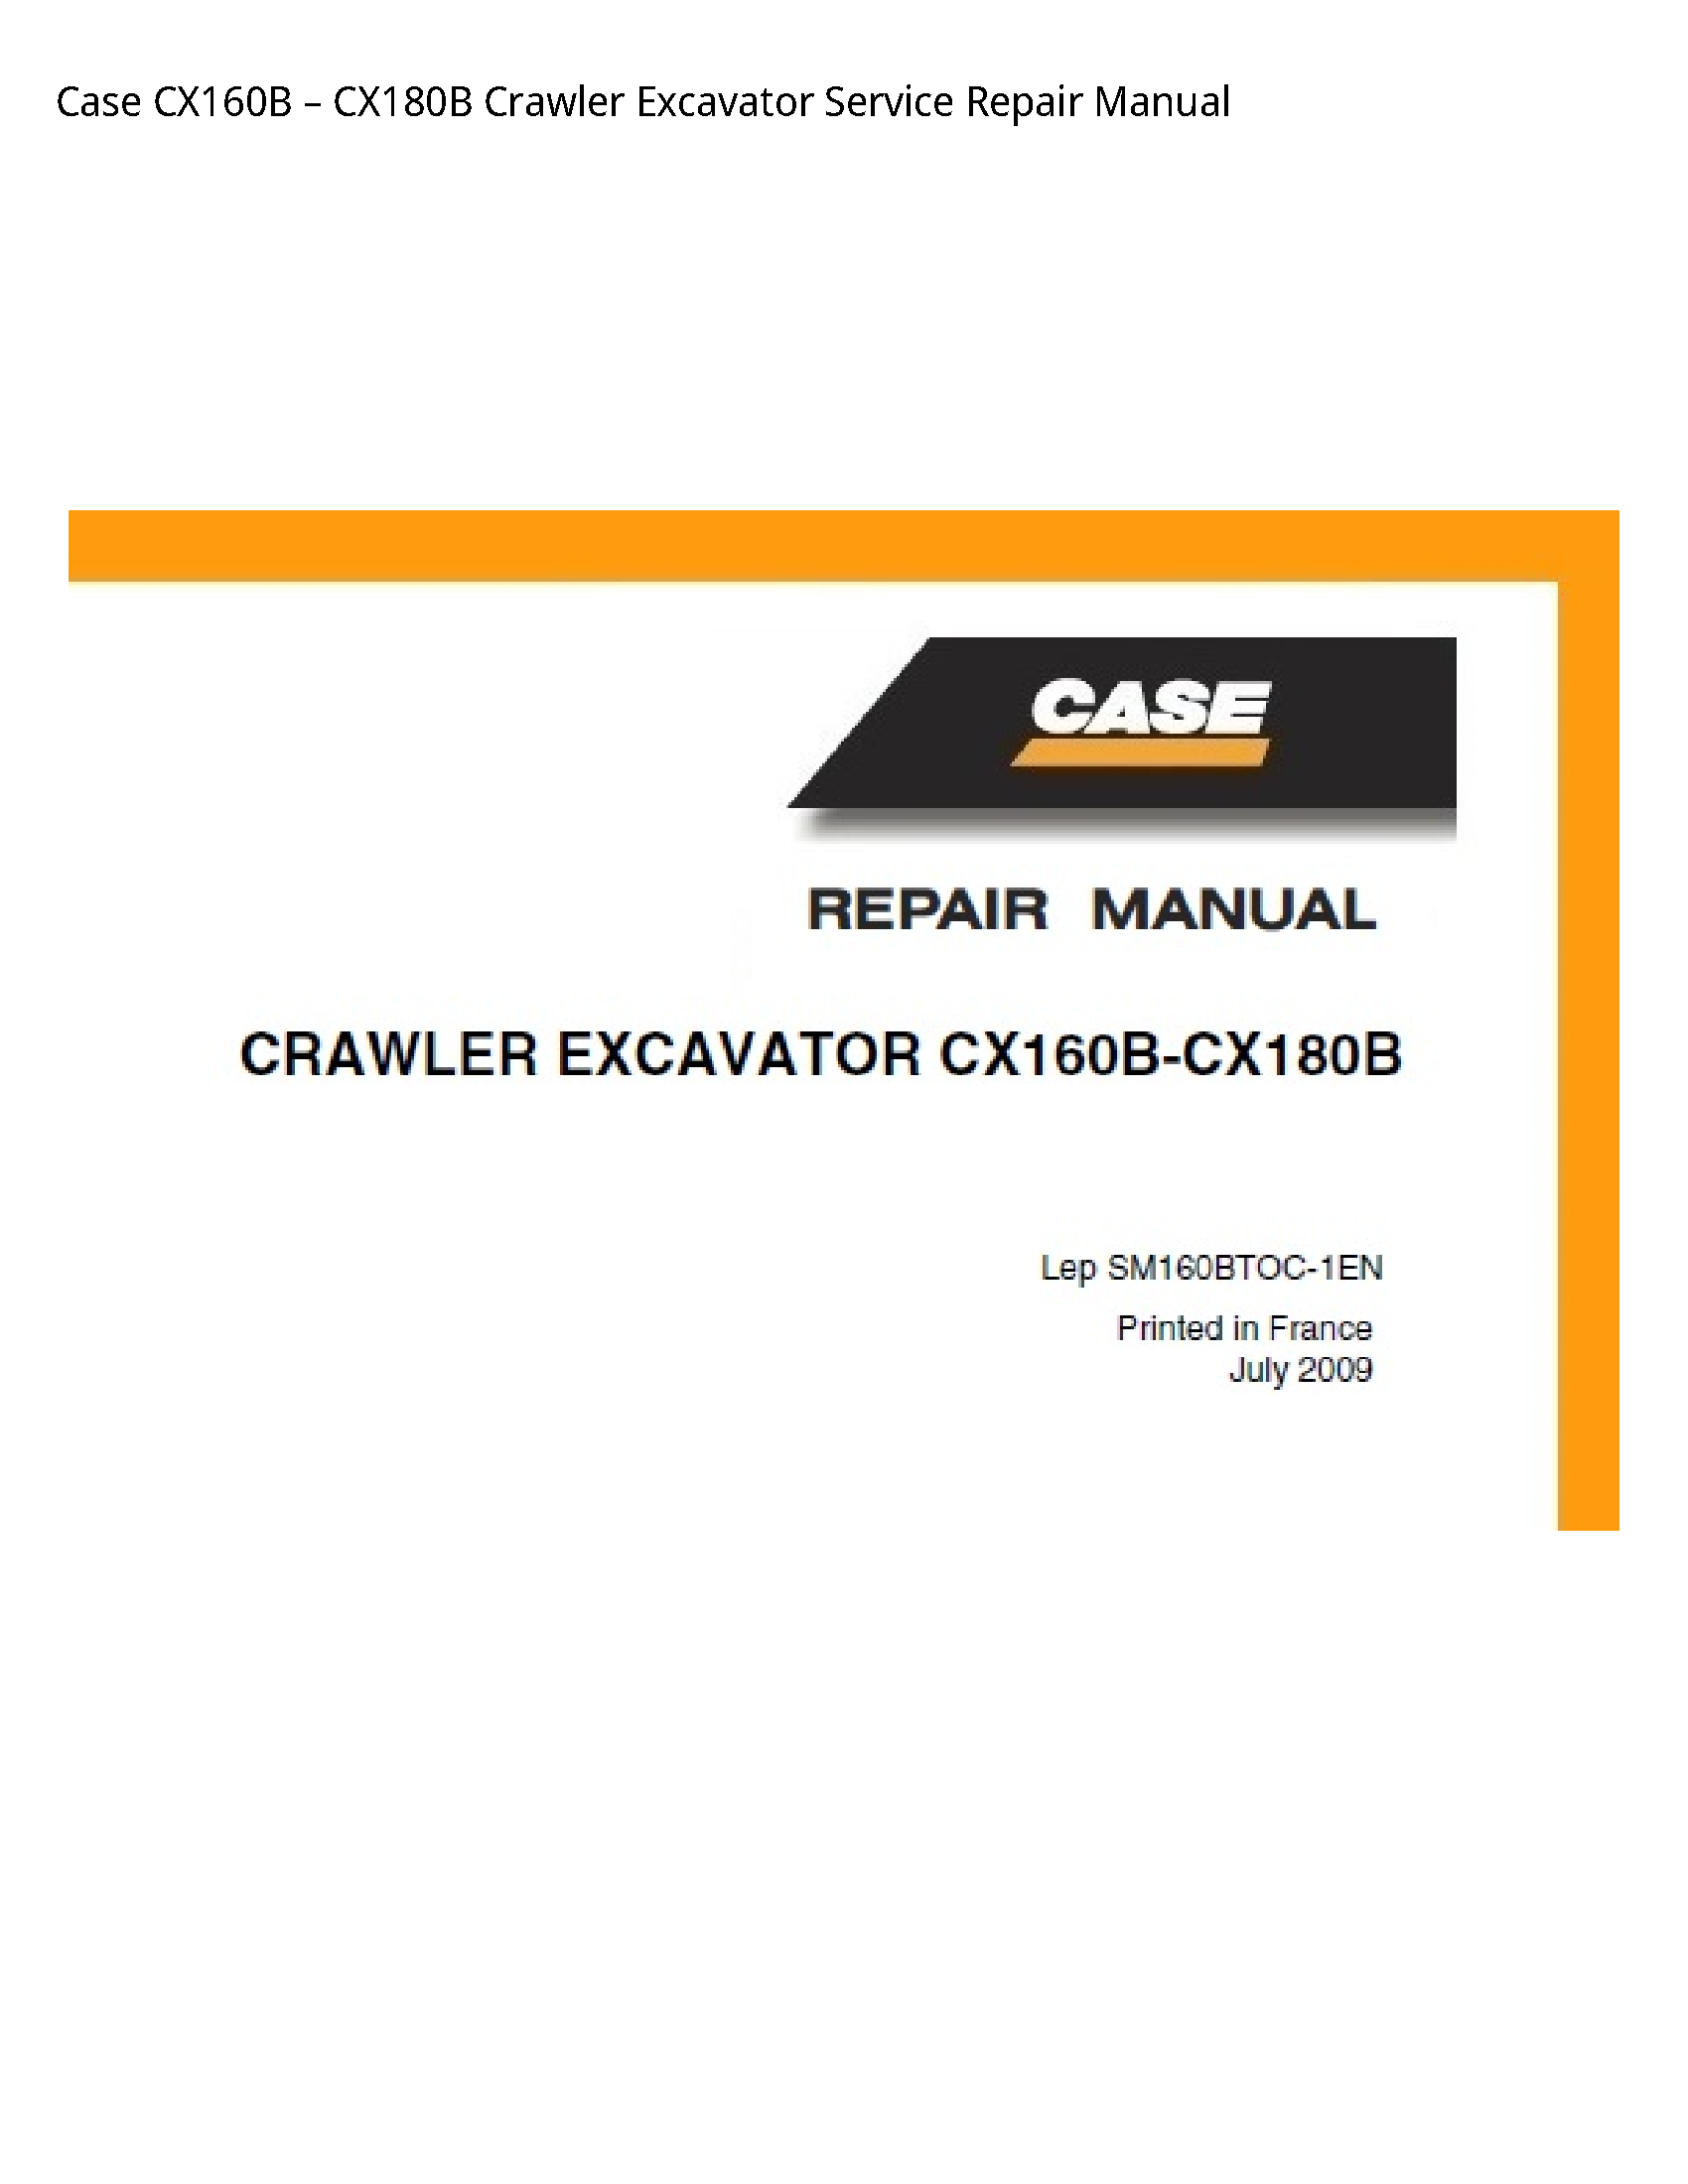 Case/Case IH CX160B Crawler Excavator manual